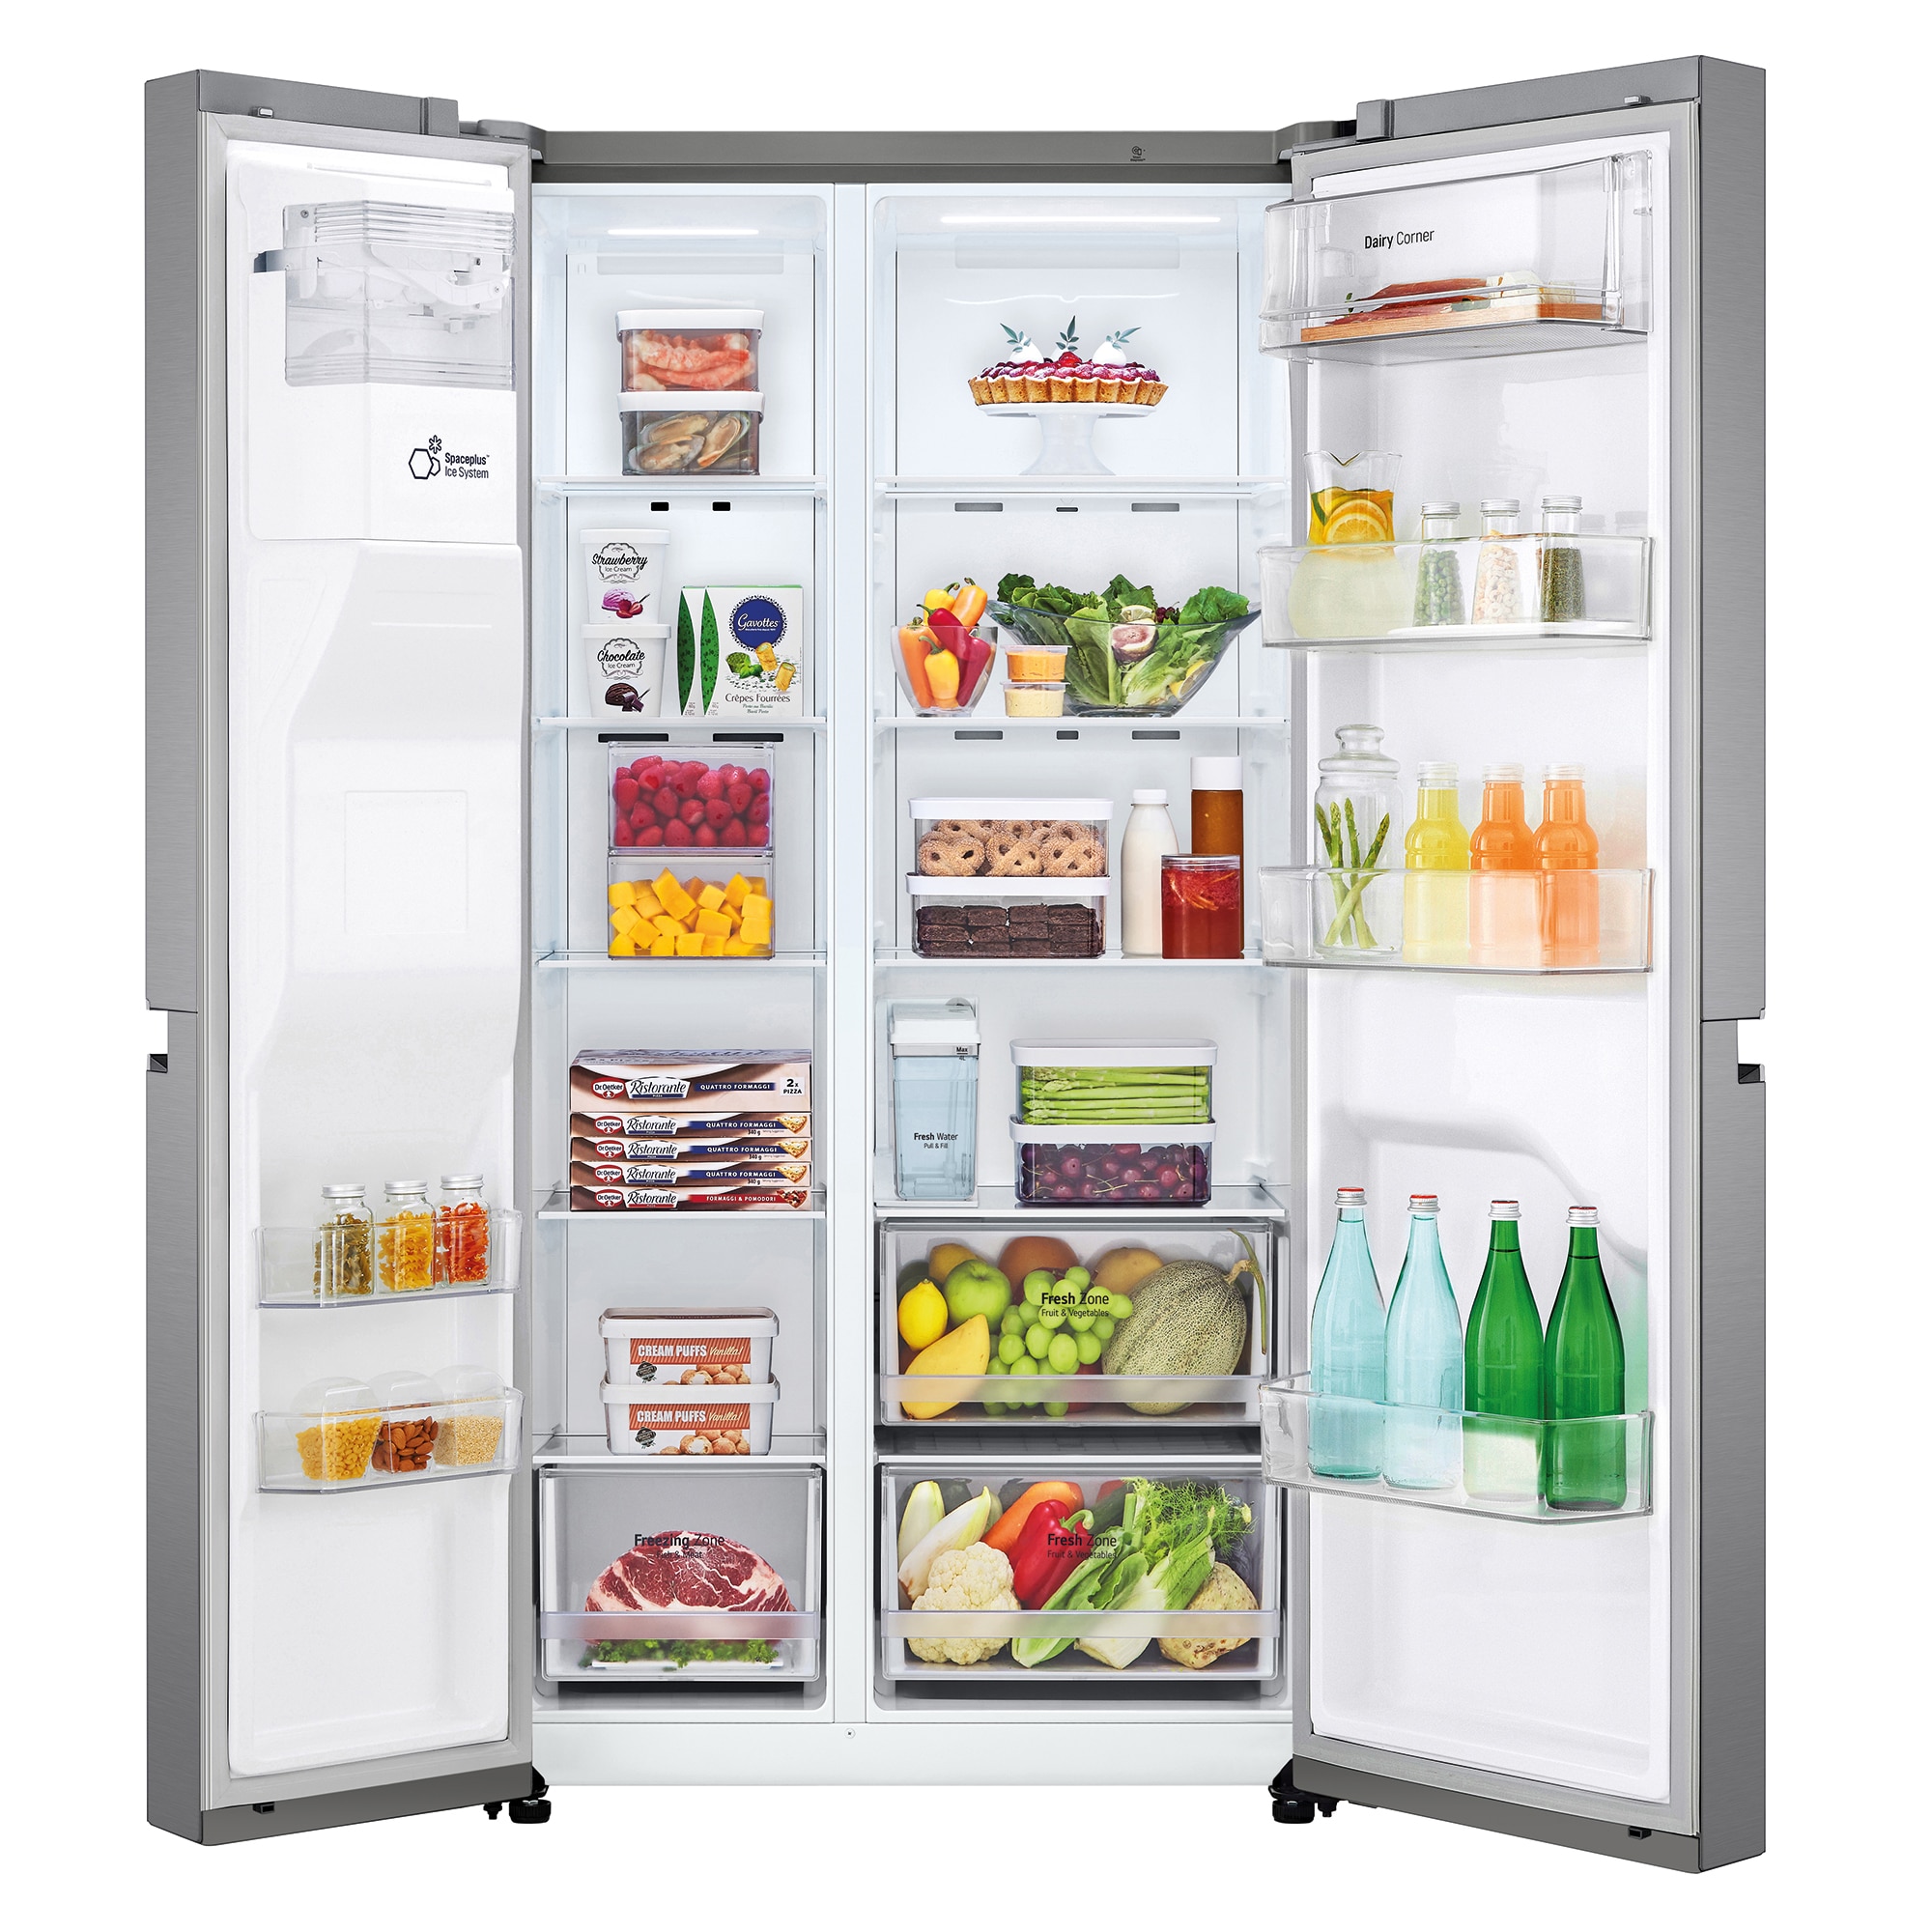 Qué tipo de frigorífico elegimos? ¿Frigorífico americano o frigorífico  'side by side'?